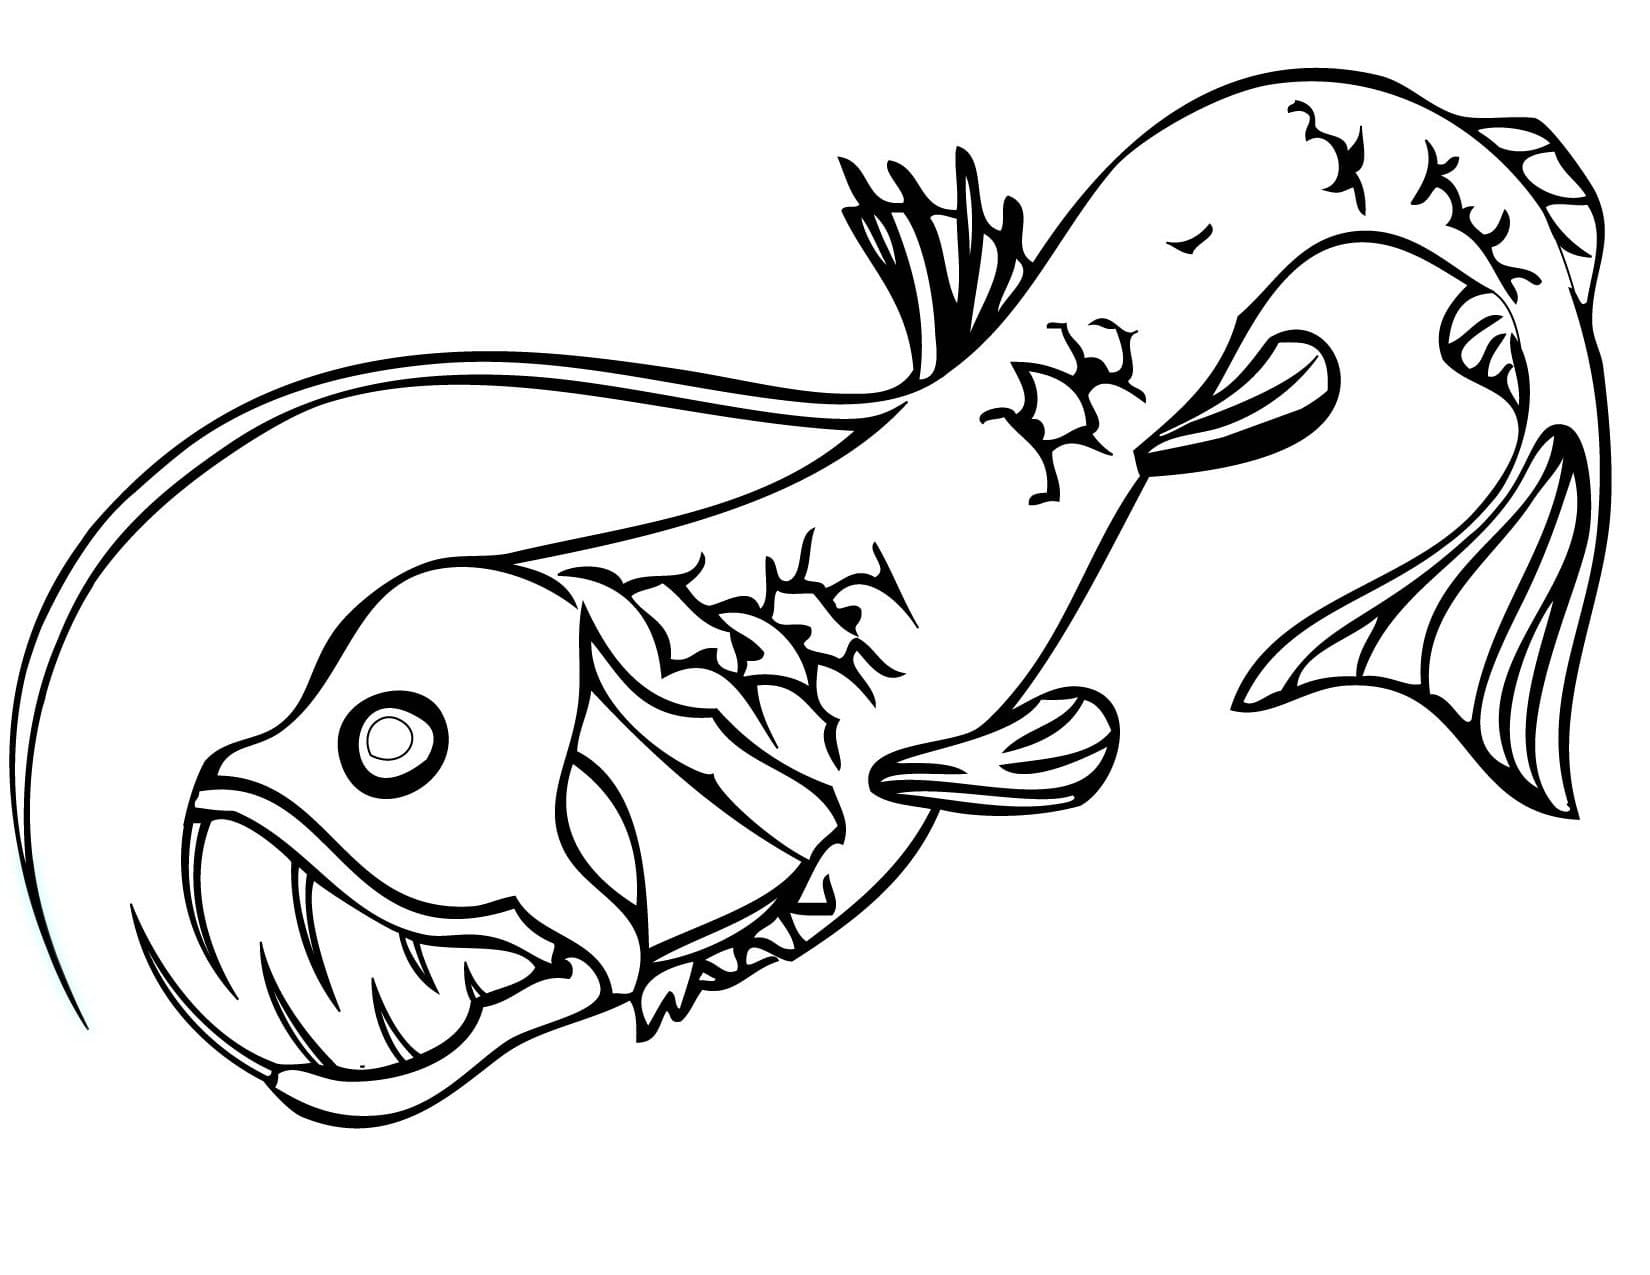 A Viperfish